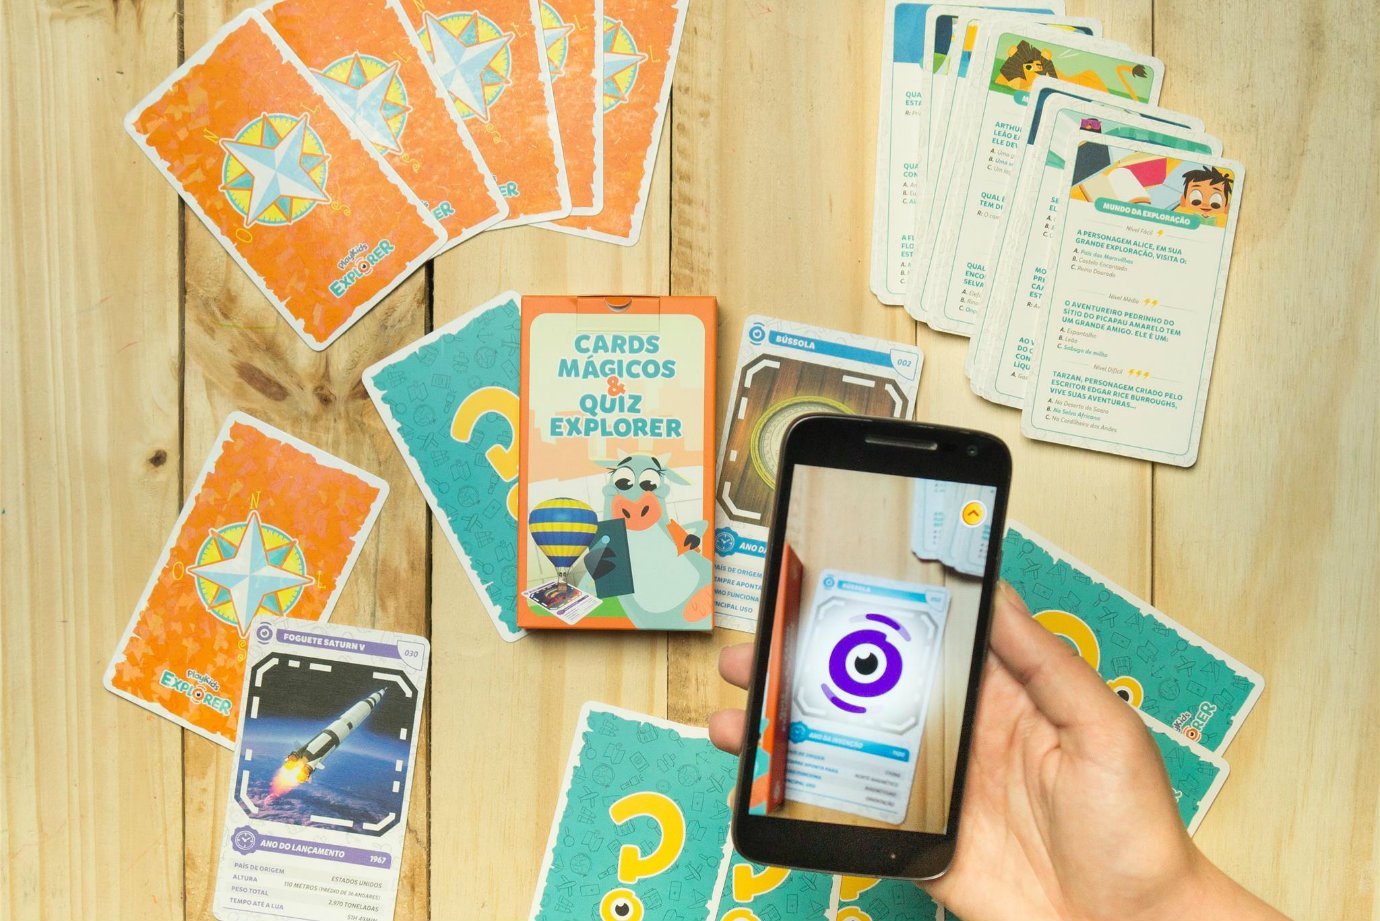 Cards mágicos do PlayKids Explorer sendo lidos por smartphone